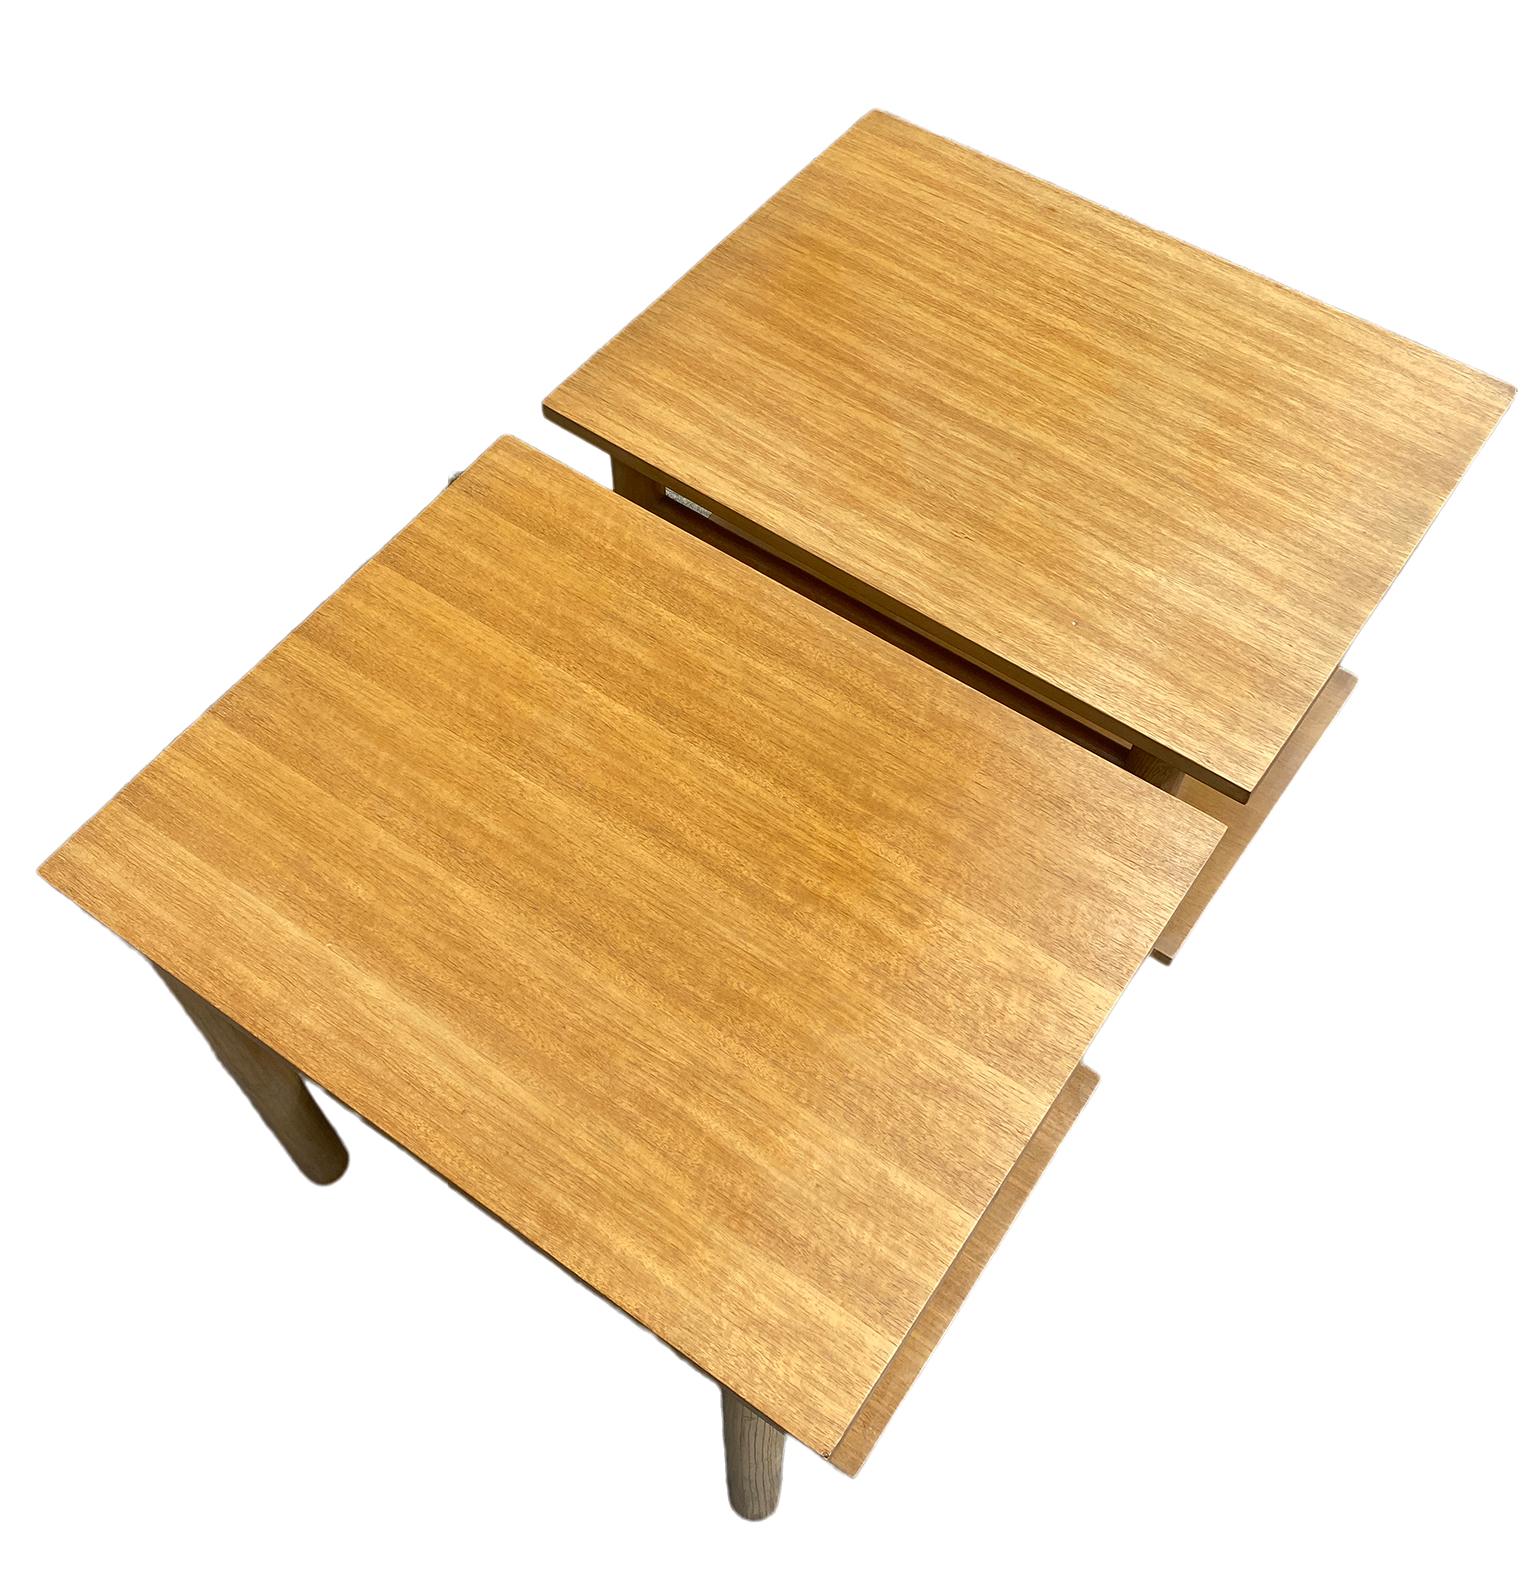 Oak '2' Mid-Century Modern Simple White oak End Side Bedside Tables Nightstands